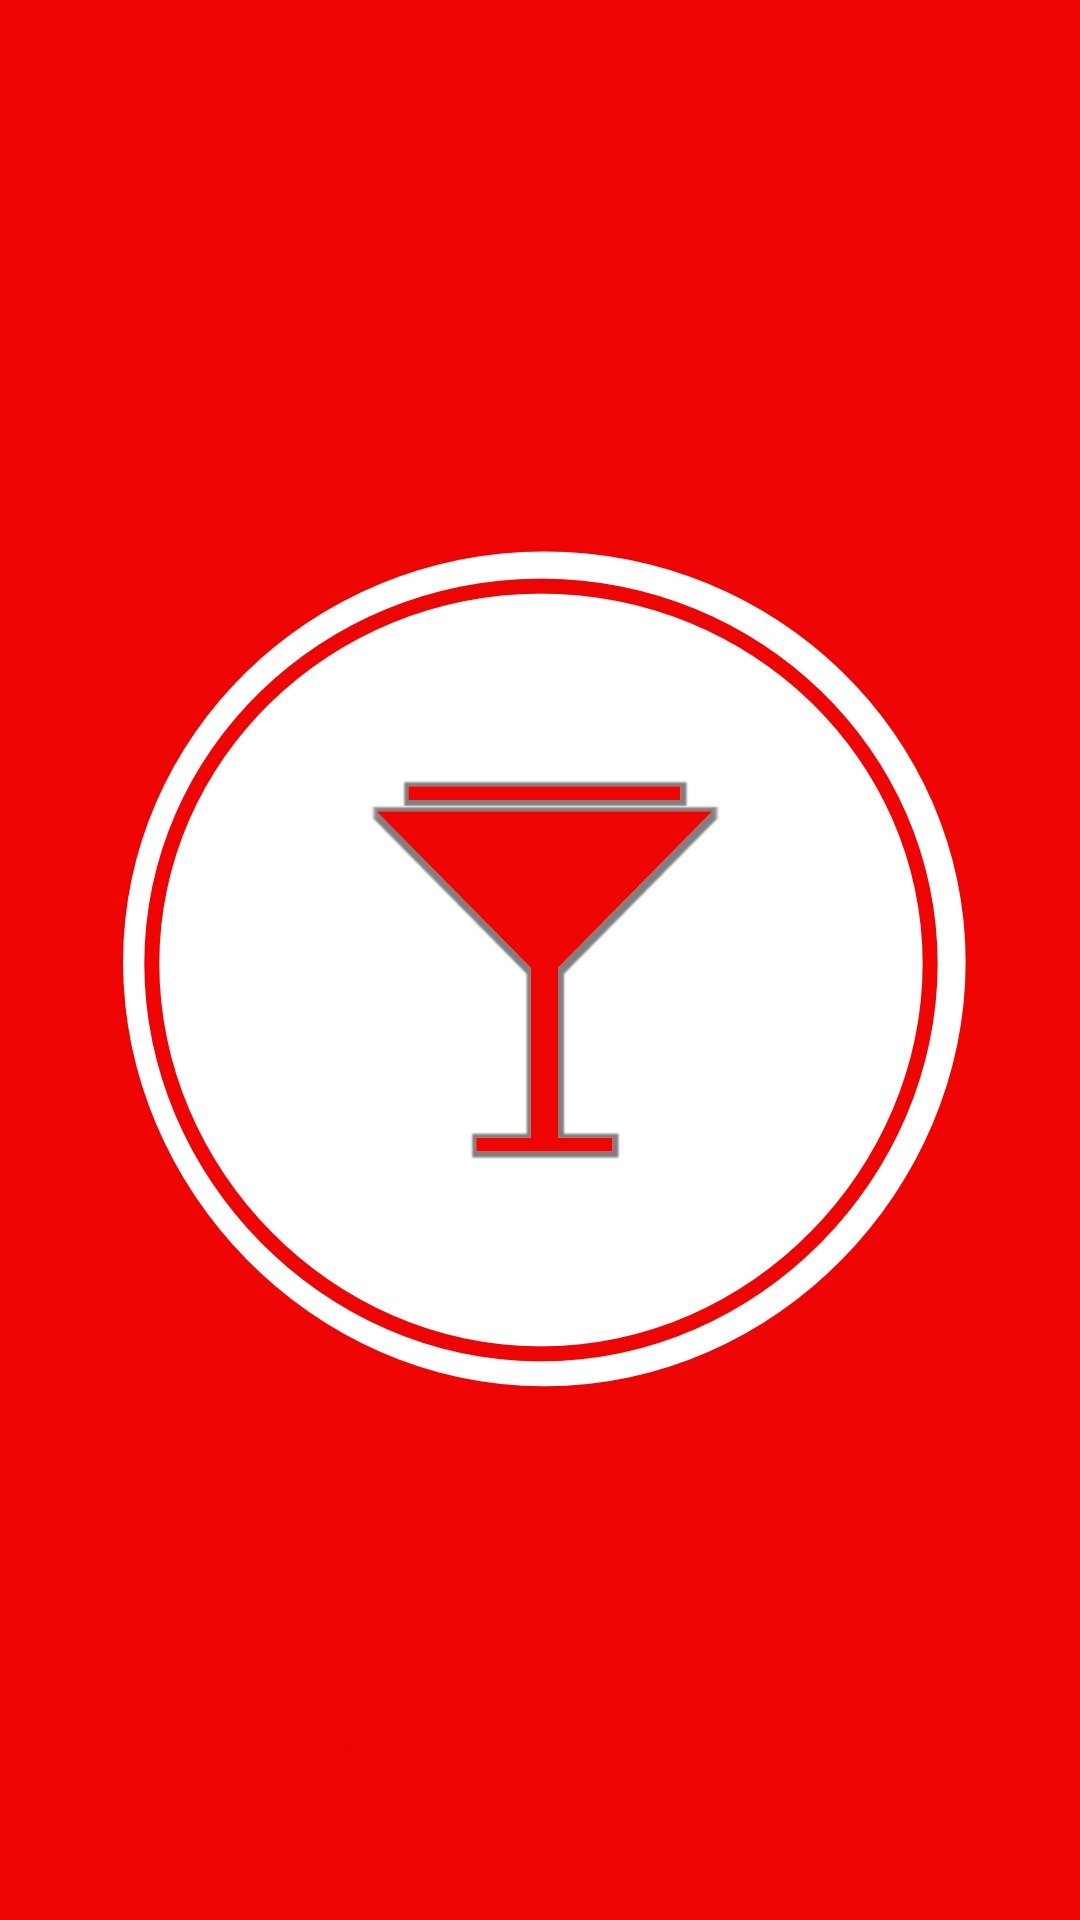 Instagram-cover-martiniglass-red-lotnotes.com.jpg